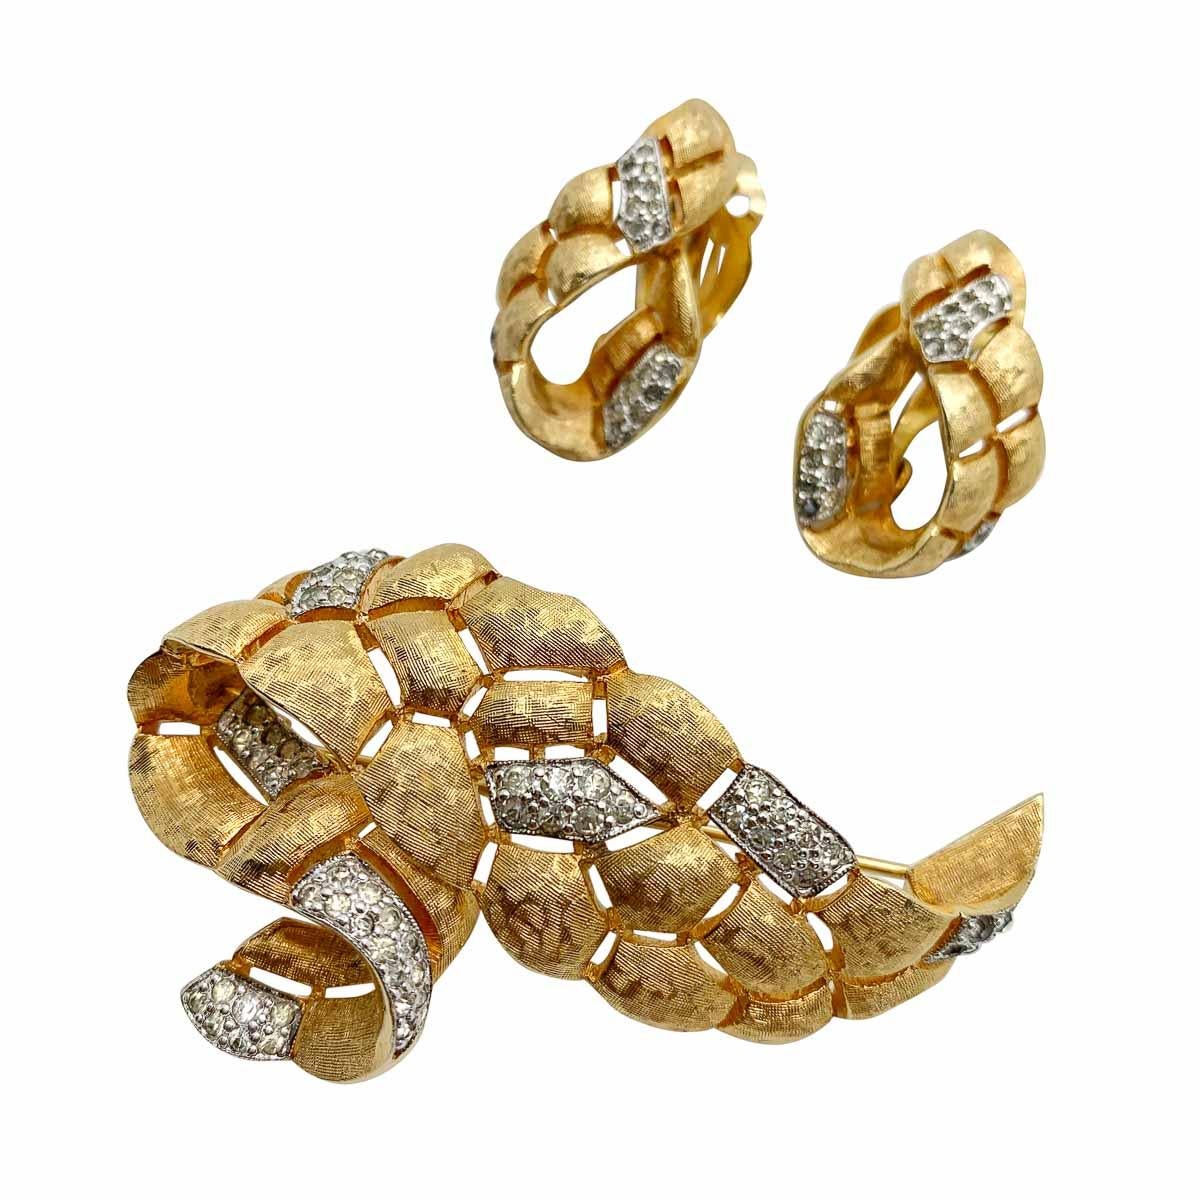 Eine alte Jomaz-Brosche und Ohrringe aus den 1960er Jahren. Sie zeichnet sich durch ein stilvolles Design im Swag-Stil, eine strukturierte goldene Verkleidung und kontrastierende, mit Pflastersteinen besetzte Kristallpaneele aus. Die Wurzeln des